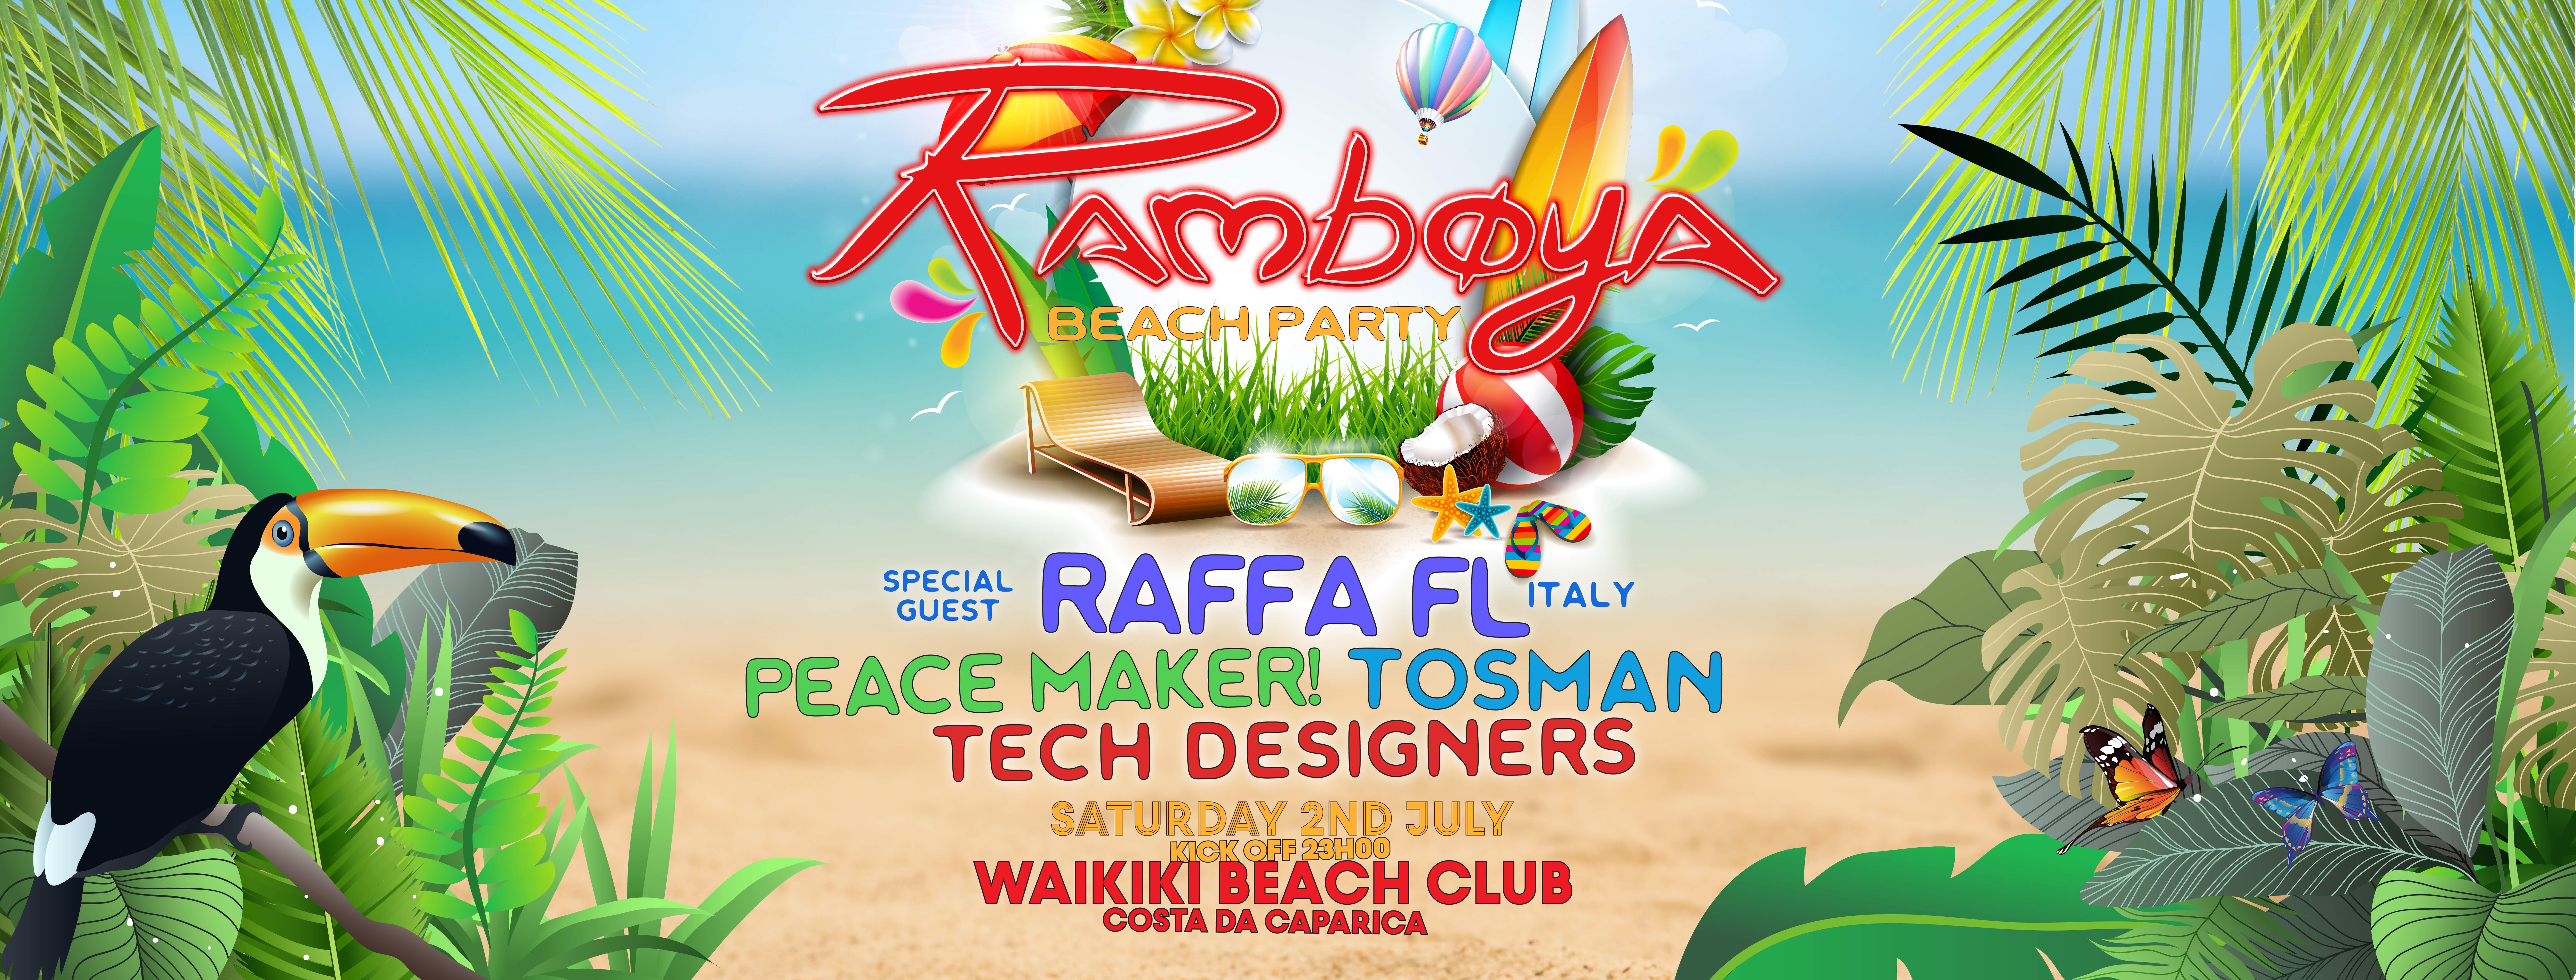 Ramboya Beach Party with Raffa FL [Italy] at Caparica - フライヤー表